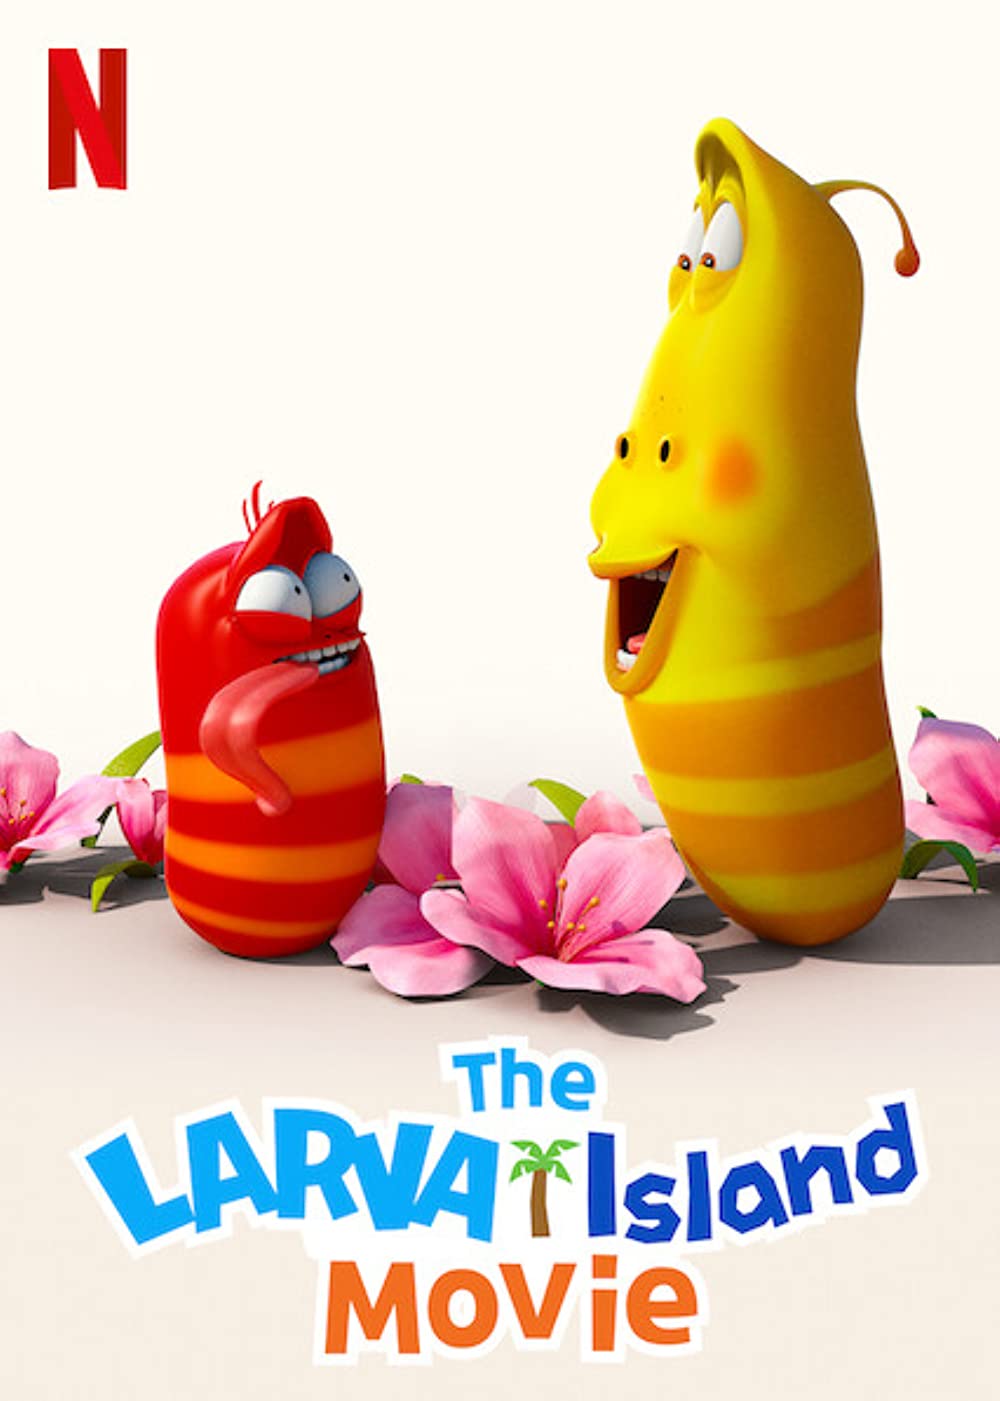 Filmbeschreibung zu The Larva Island Movie